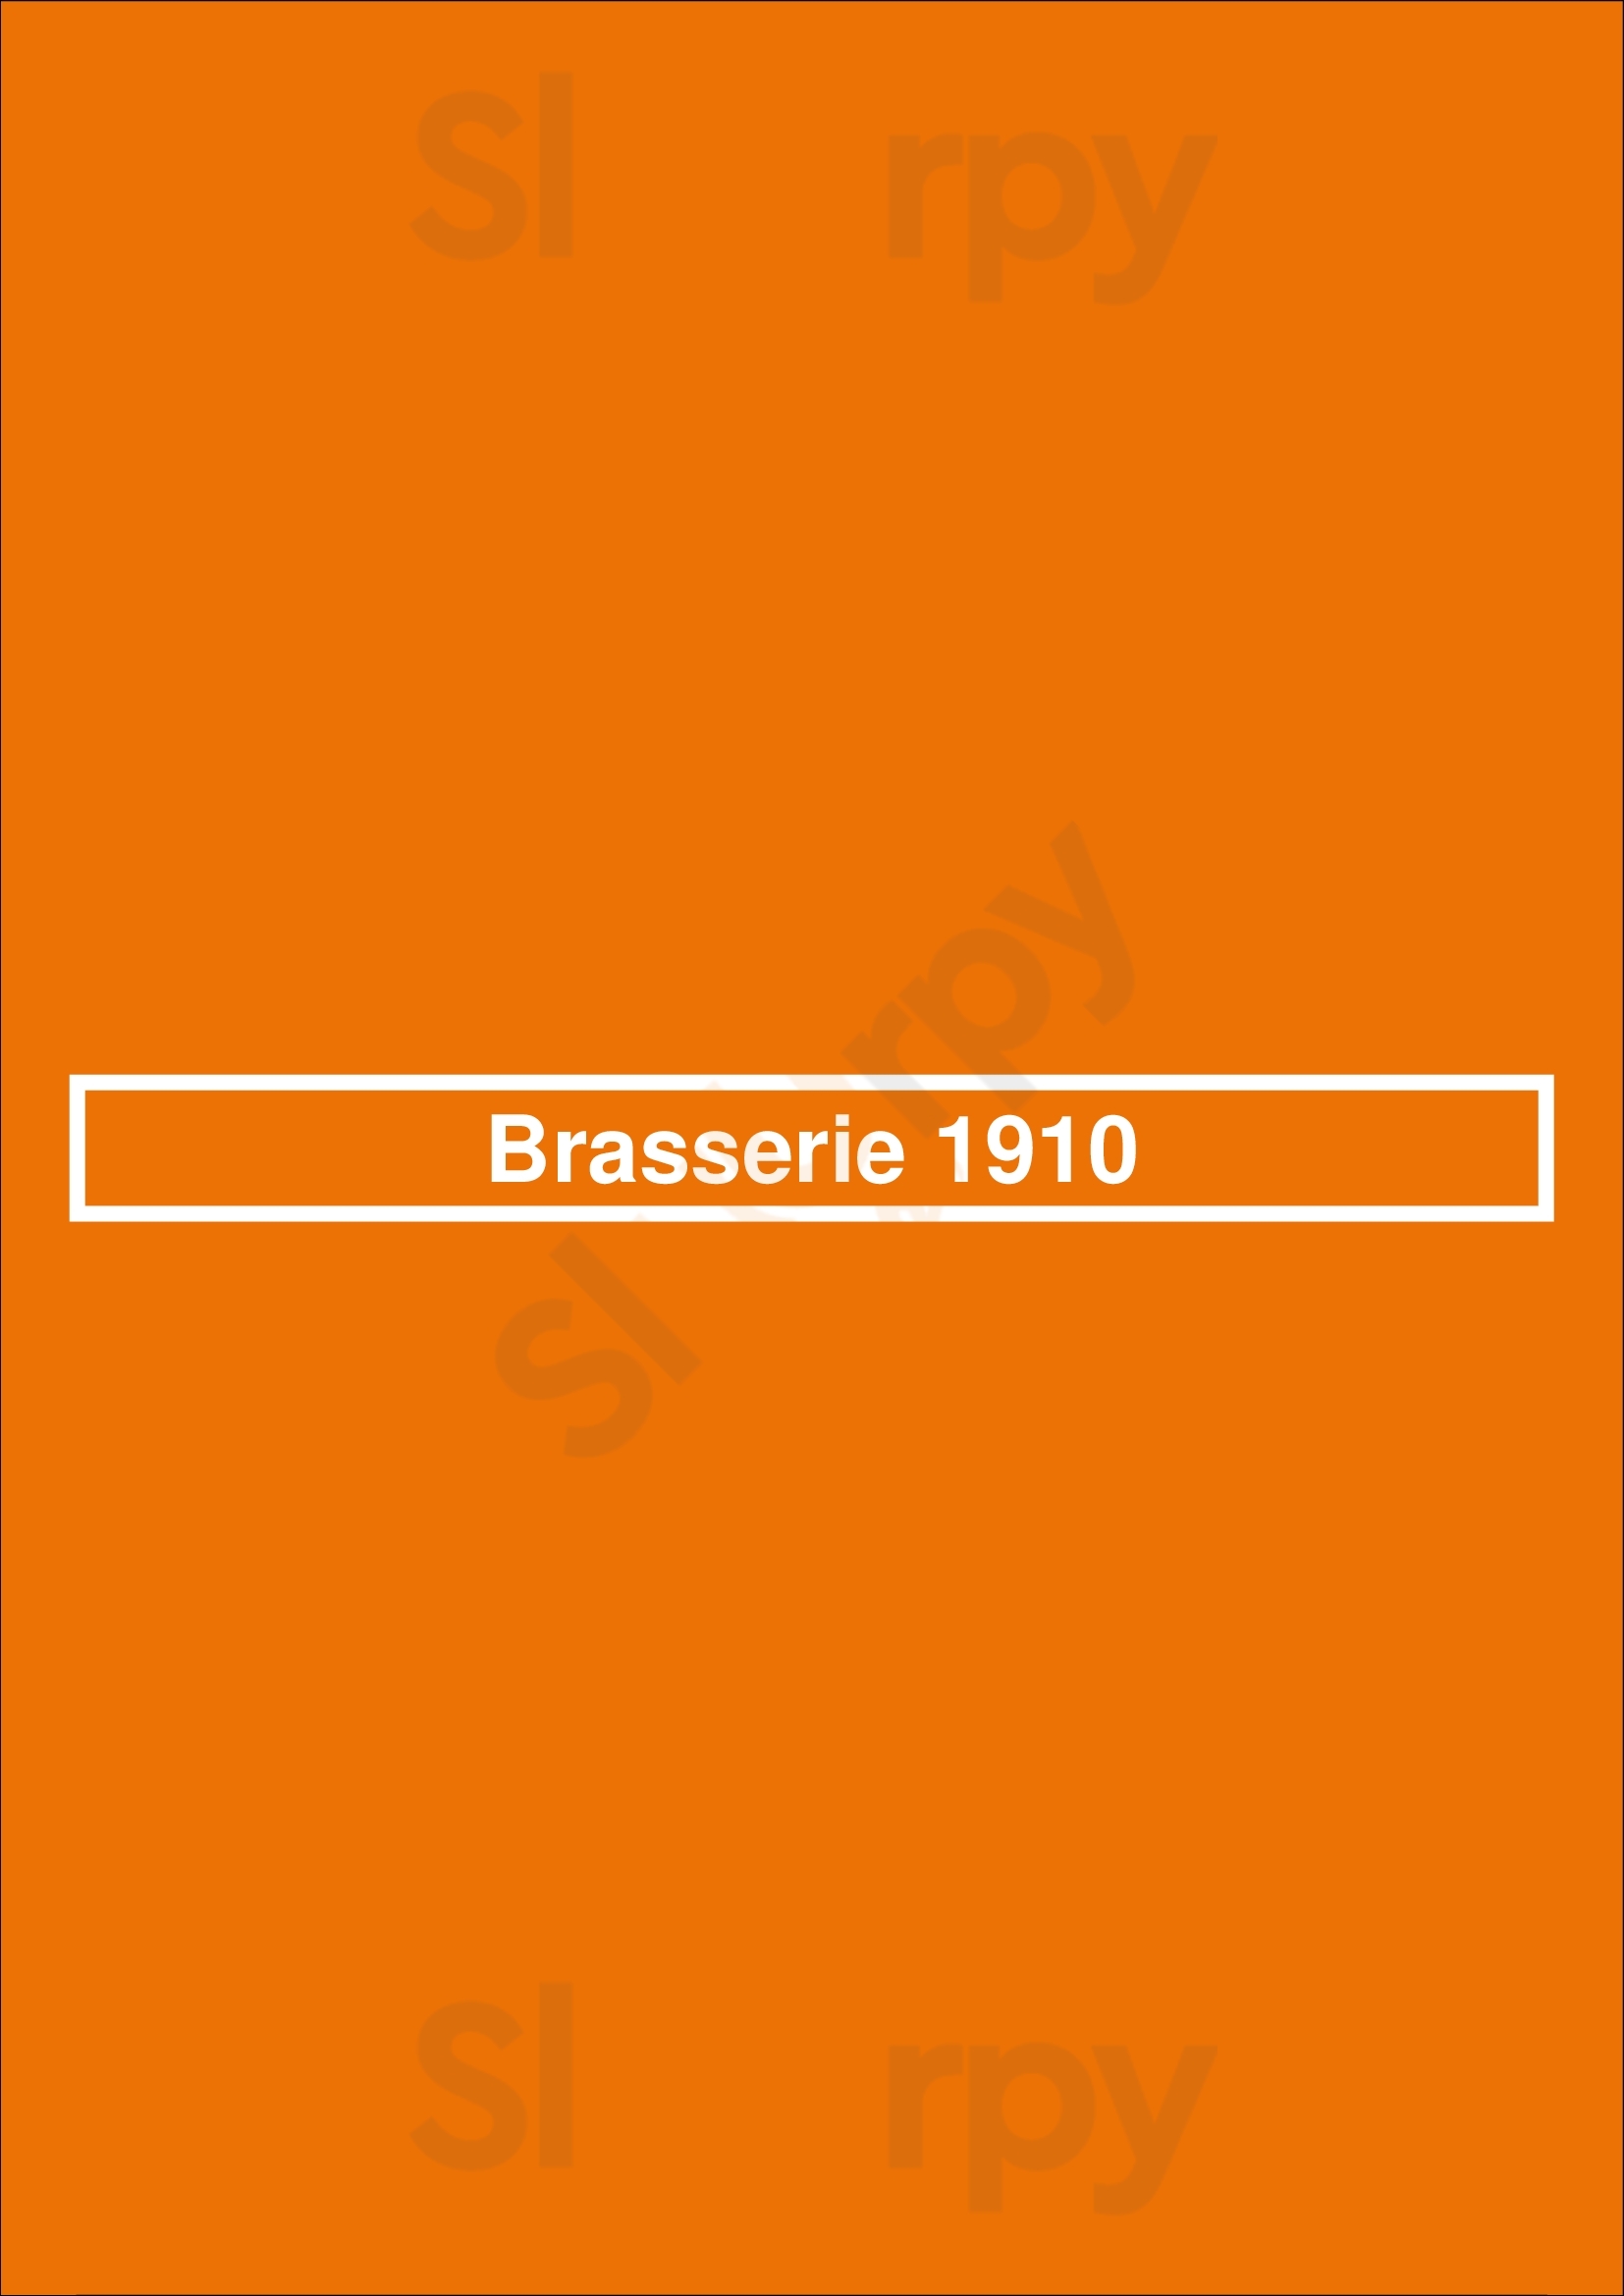 Brasserie 1910 Heerlen Menu - 1